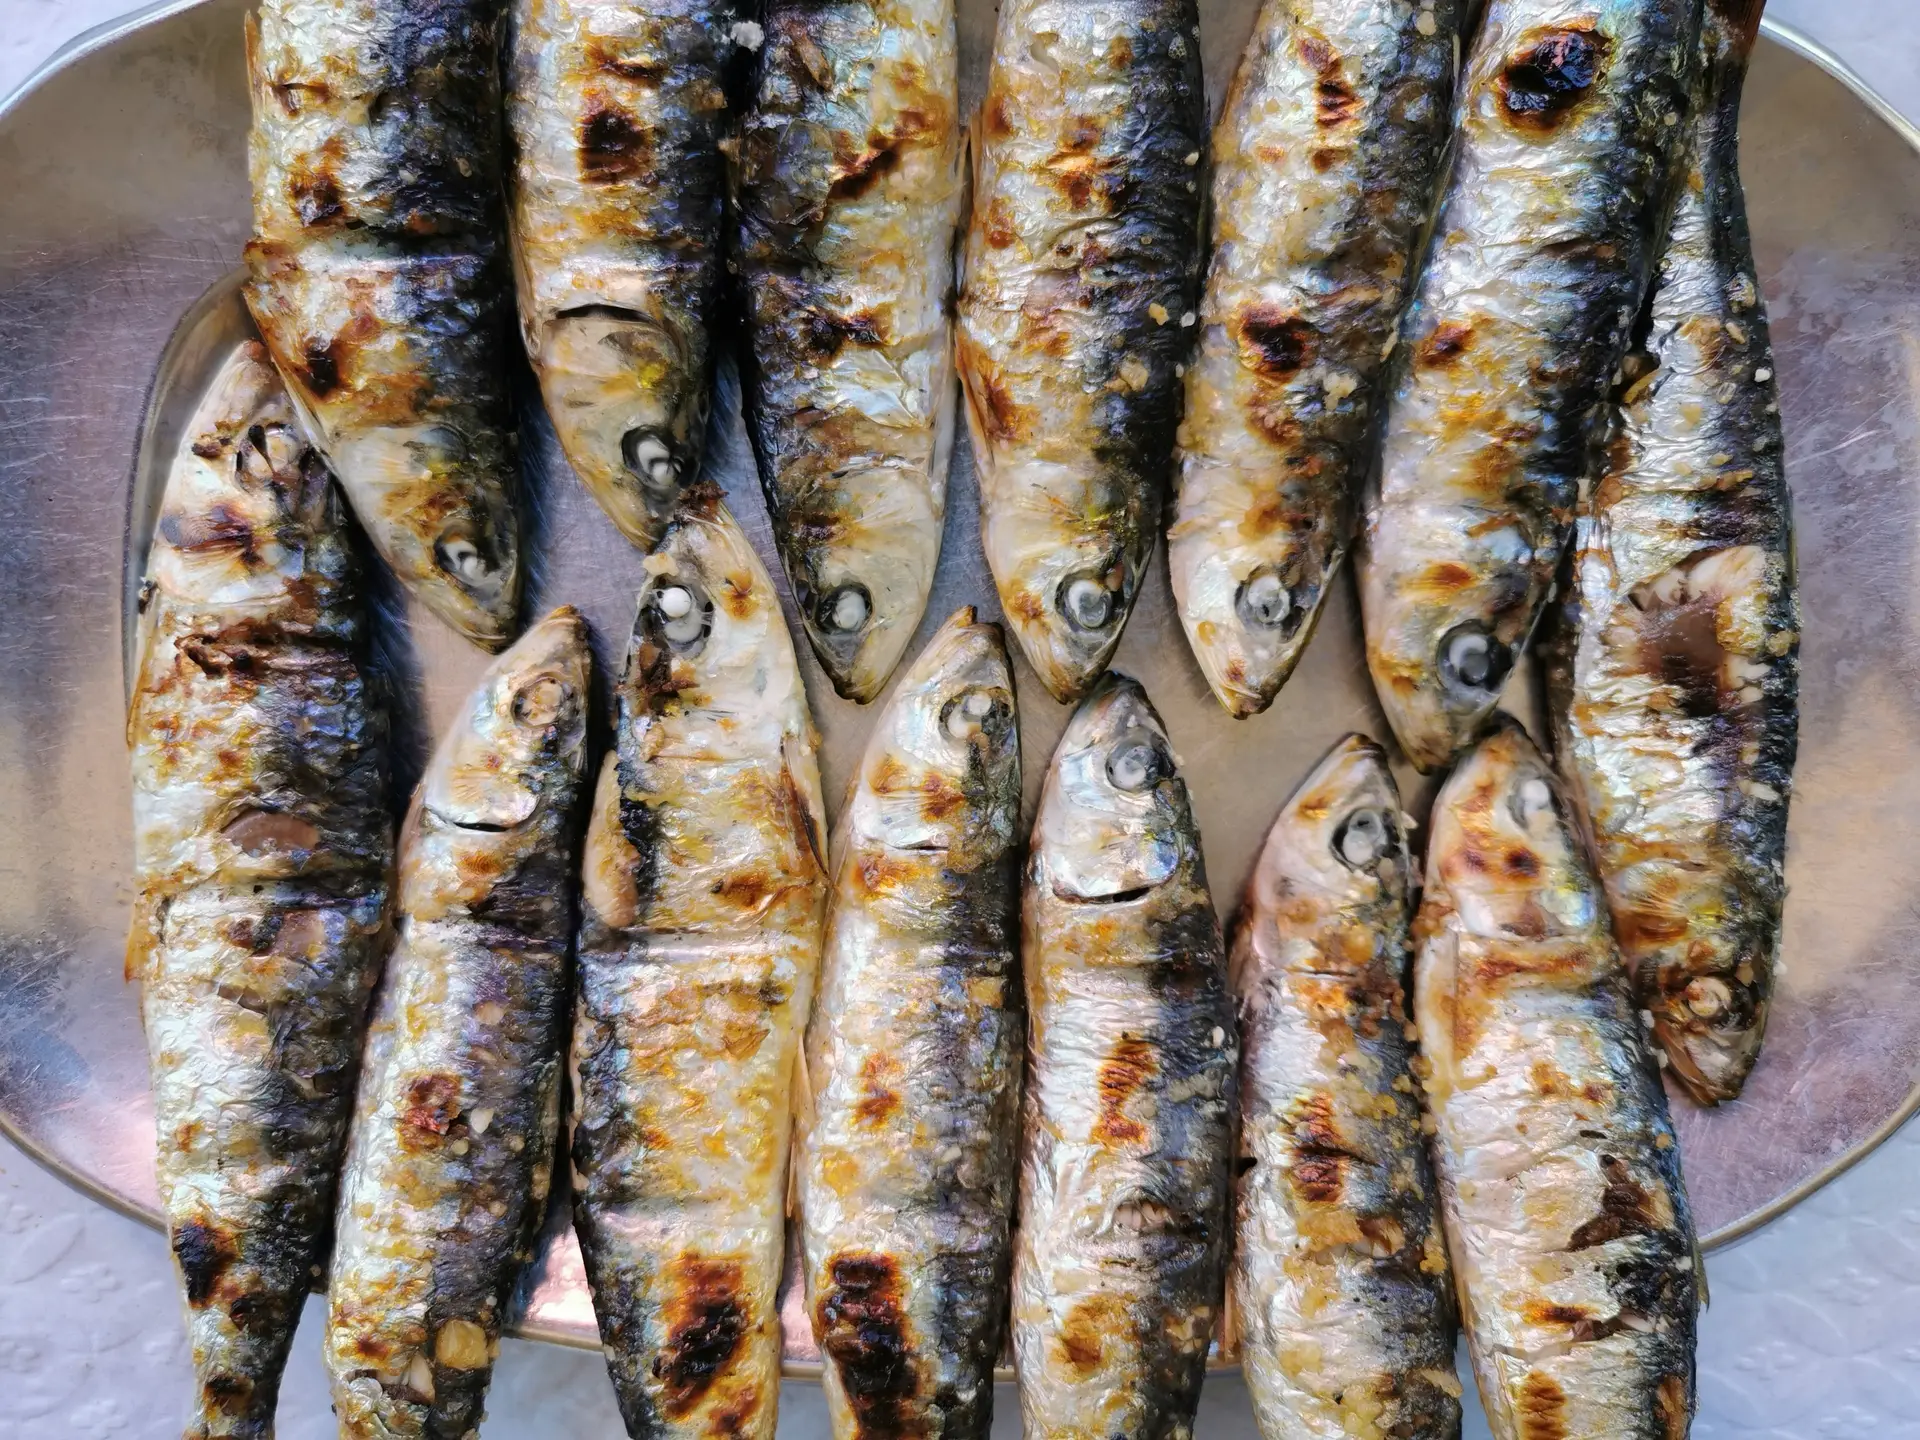 De Carnide à Madragoa, nestes restaurantes serve-se a melhor sardinha assada de Lisboa